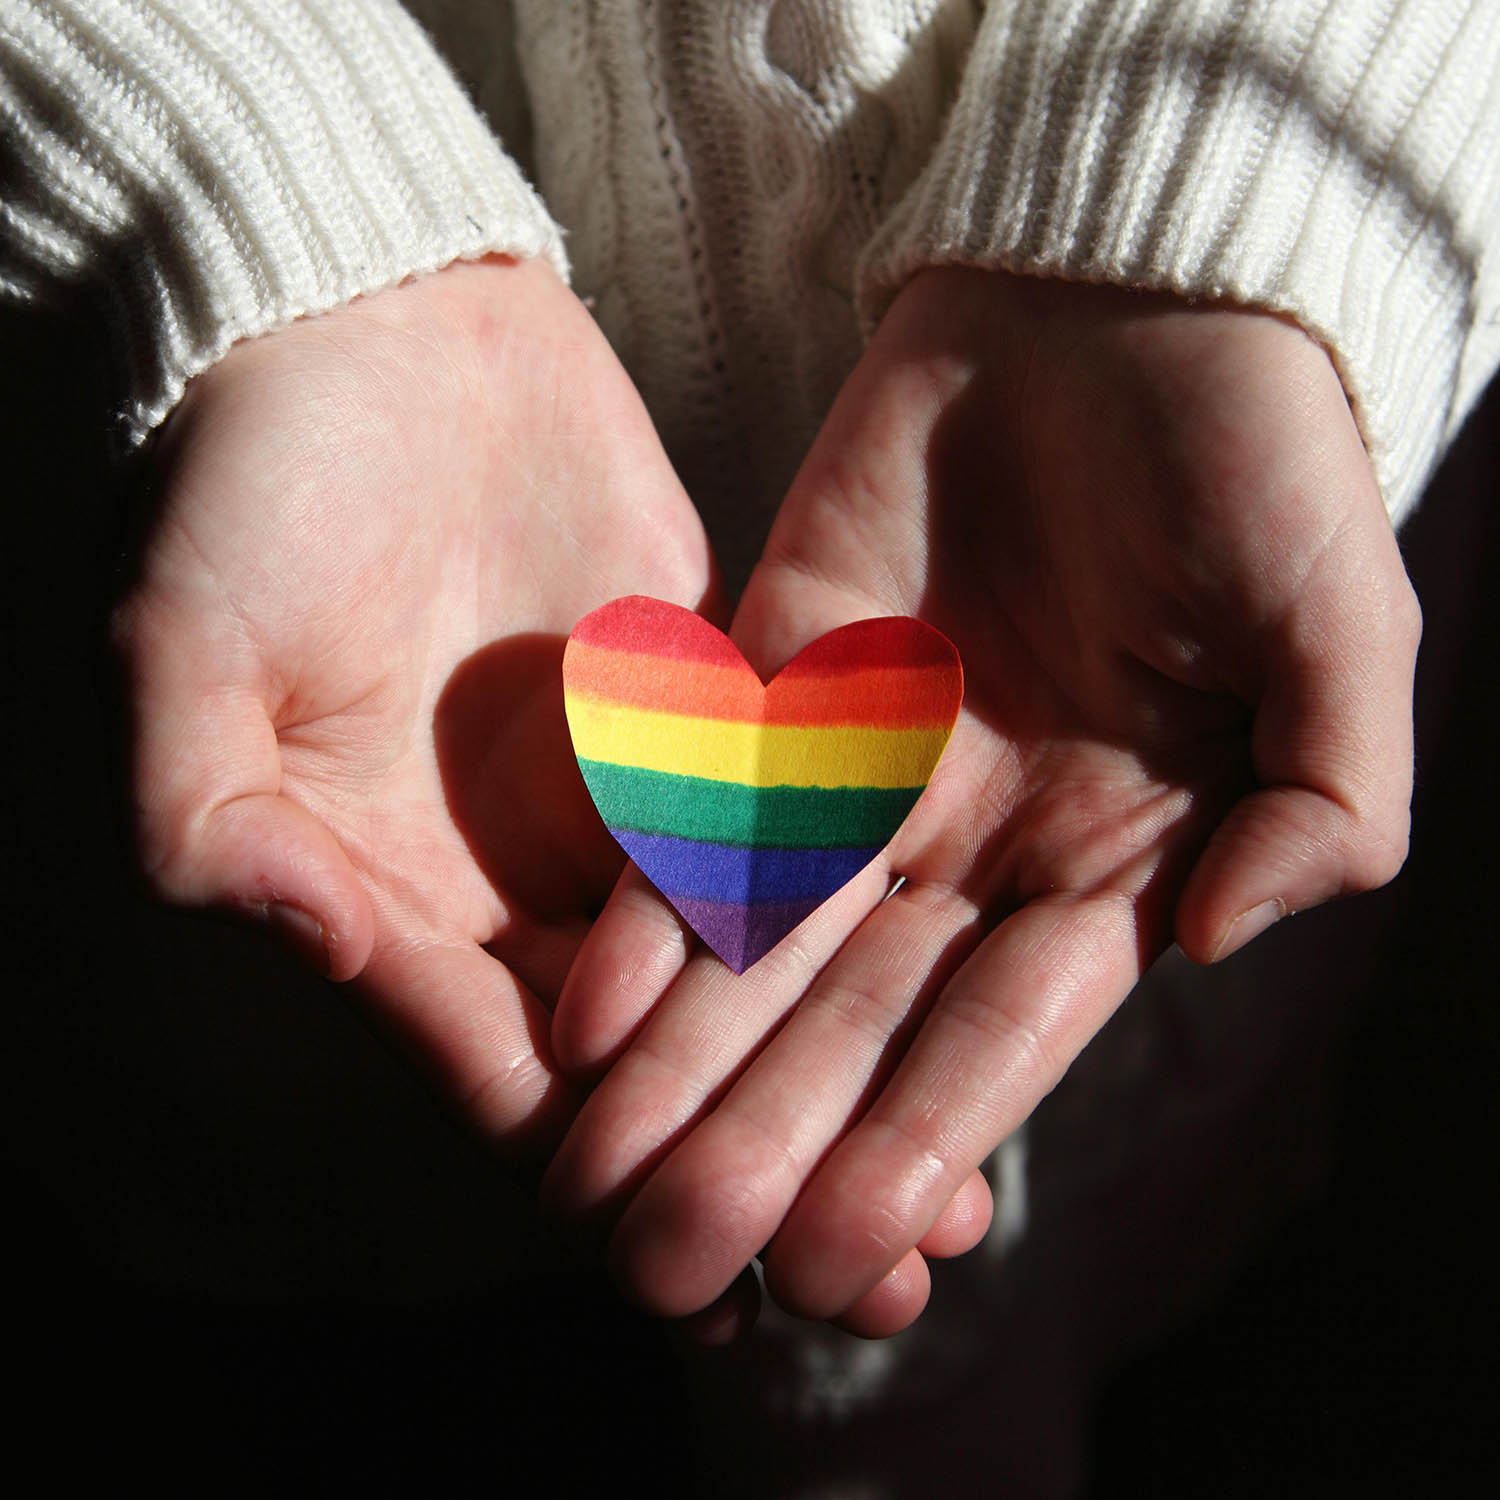 Rainbow heart held in hands